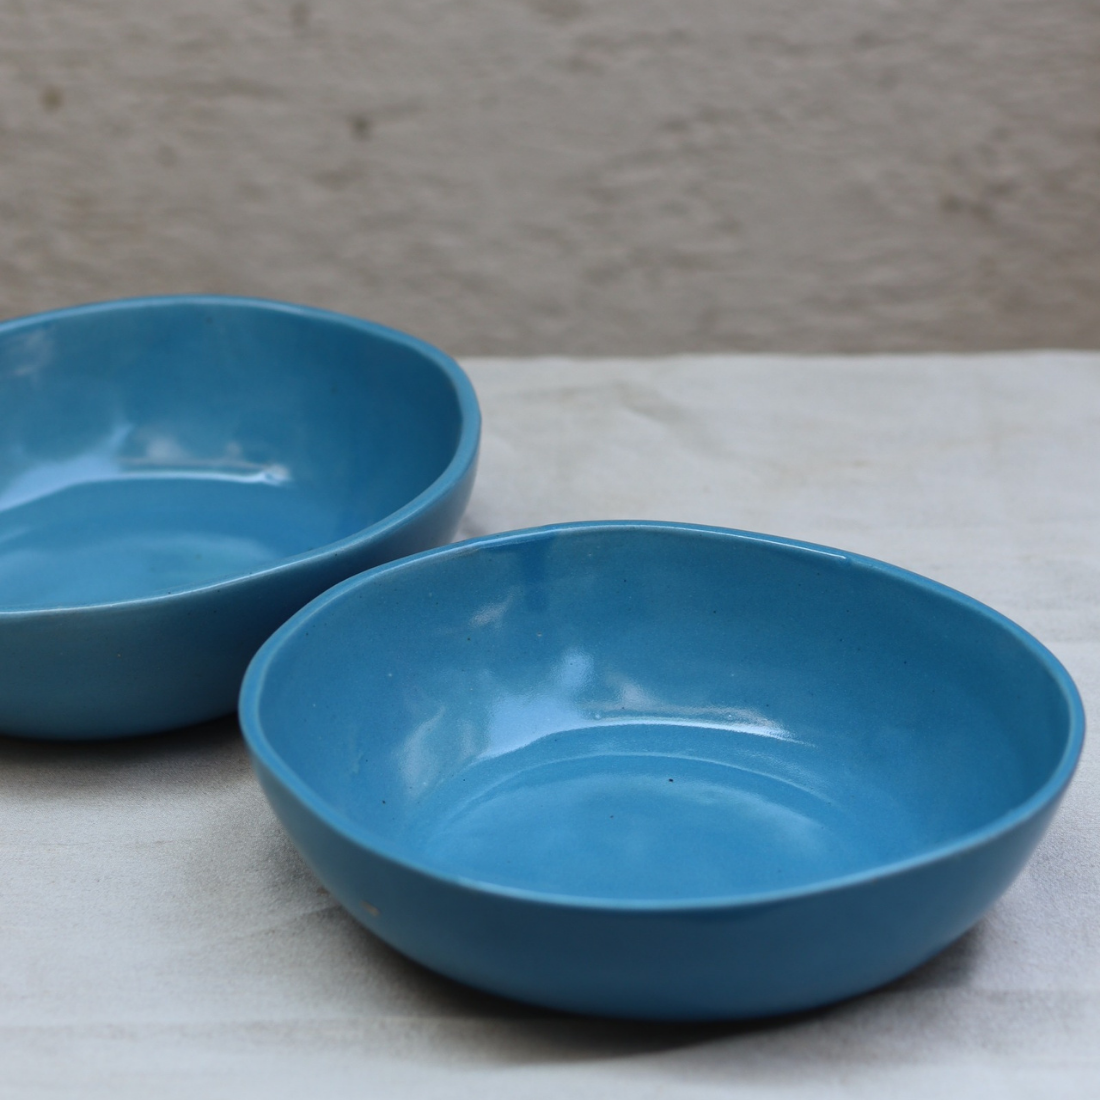 Sky blue ceramic curry bowls